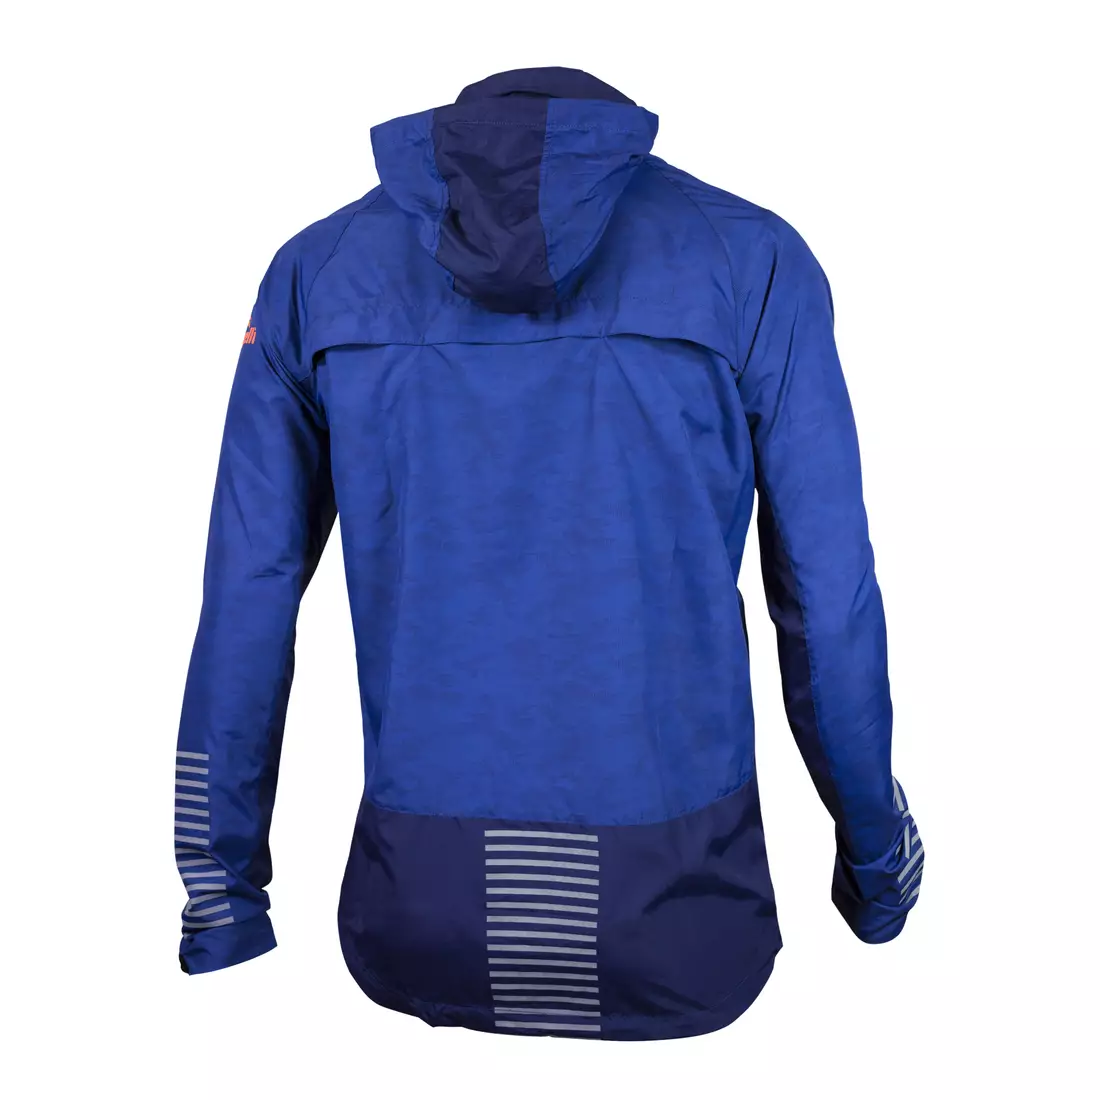 ROGELLI RUN STRUCTURE 830.840 - jachetă de vânt pentru alergare ușoară pentru bărbați, albastru și portocaliu